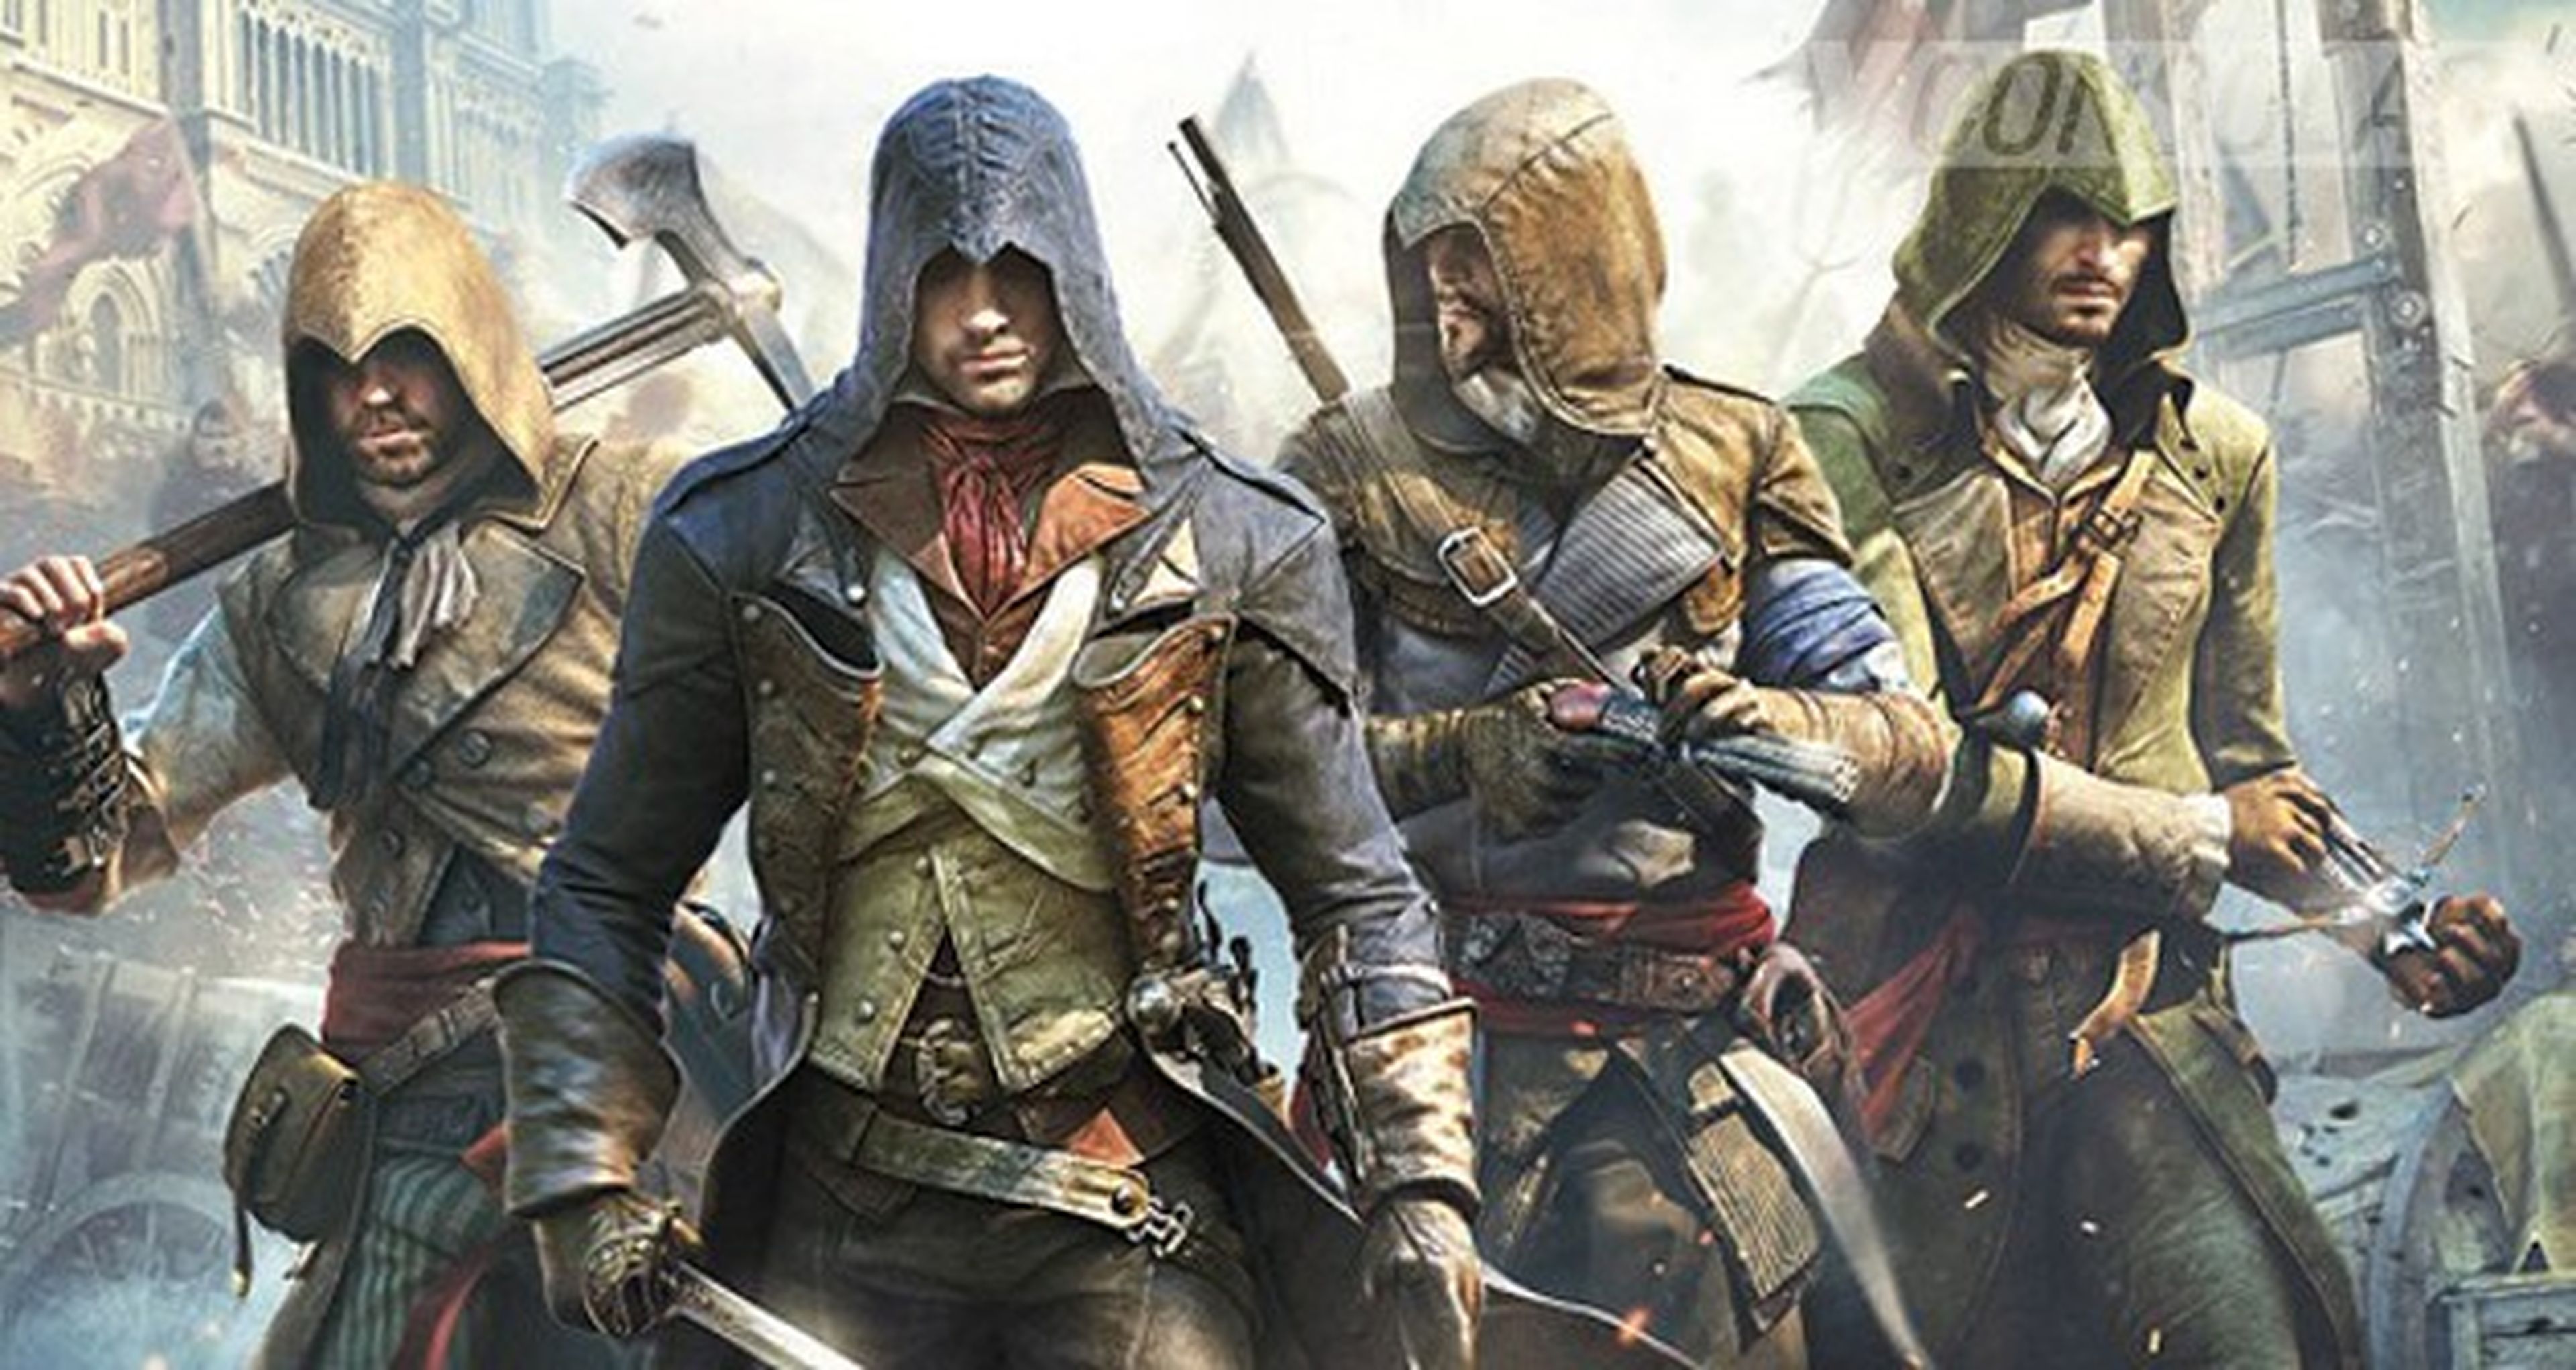 Assassin's Creed Valhalla - requisitos mínimos e recomendados para PC 